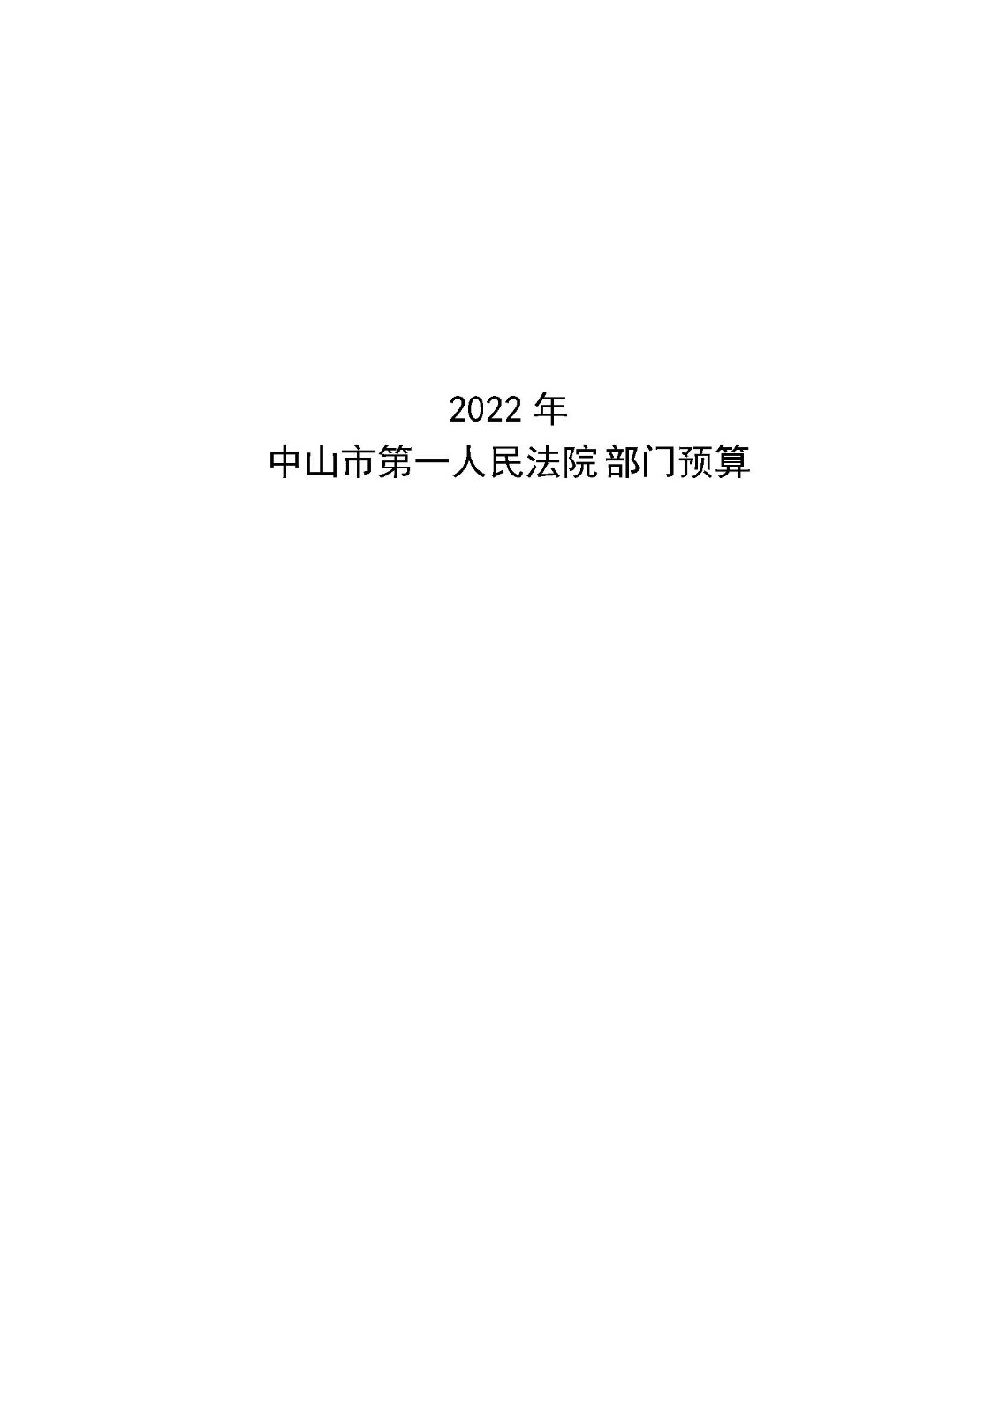 2022年中山市第一人民法院部门预算_页面_01.jpg